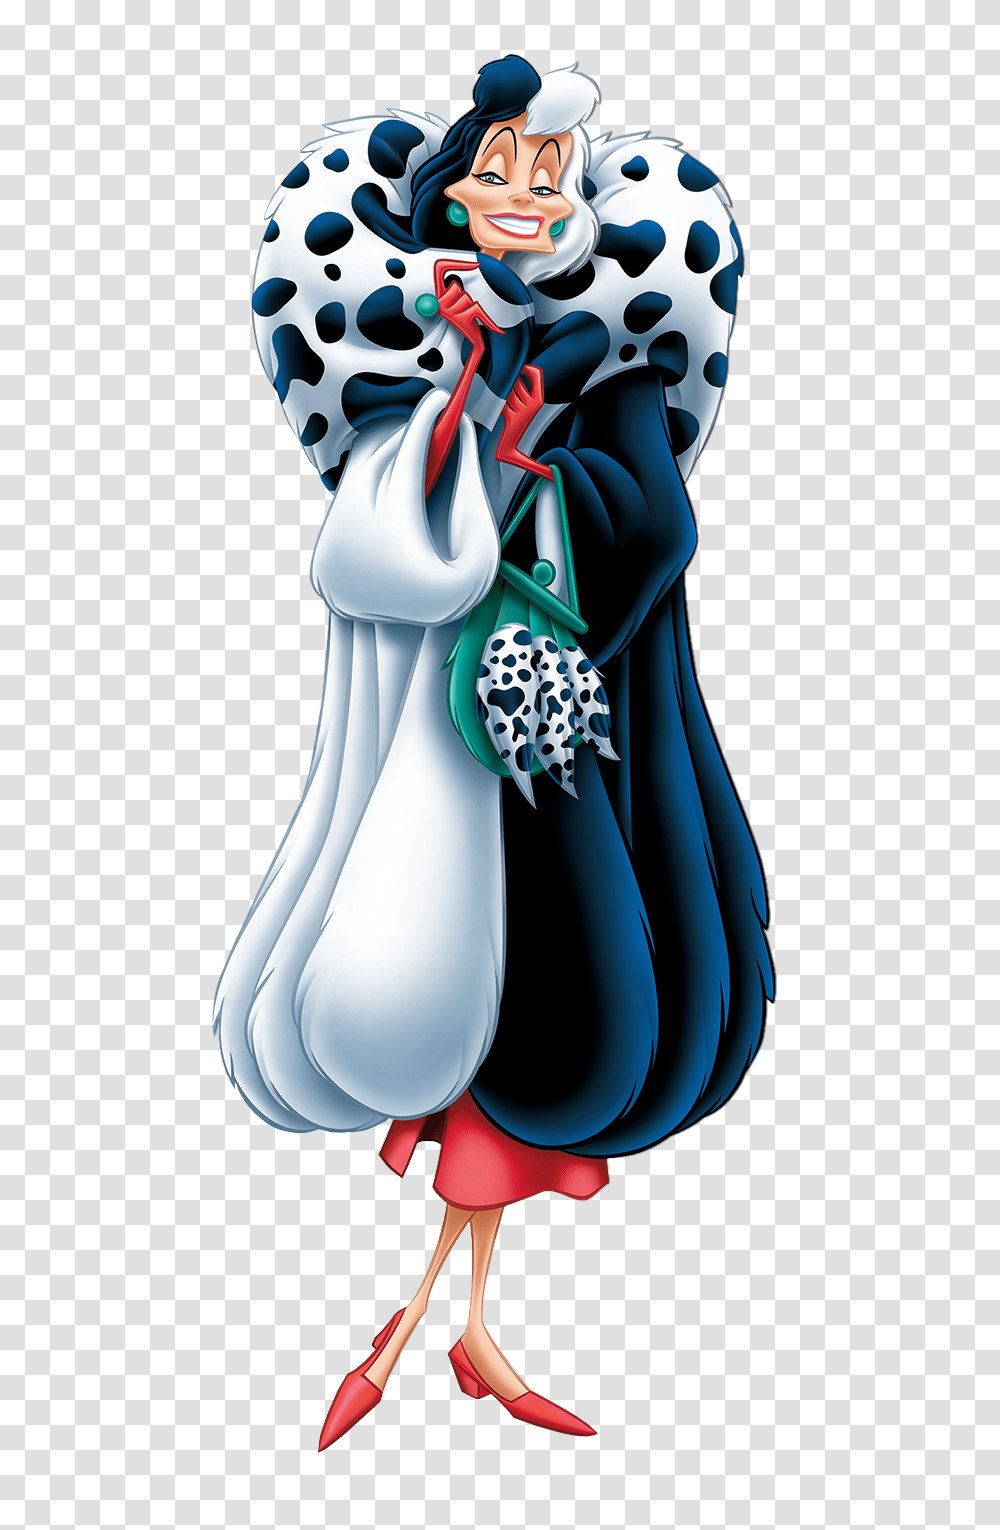 Cruella De Vil Dalmatians Clip Art Image, Apparel, Jar, Cape Transparent Png